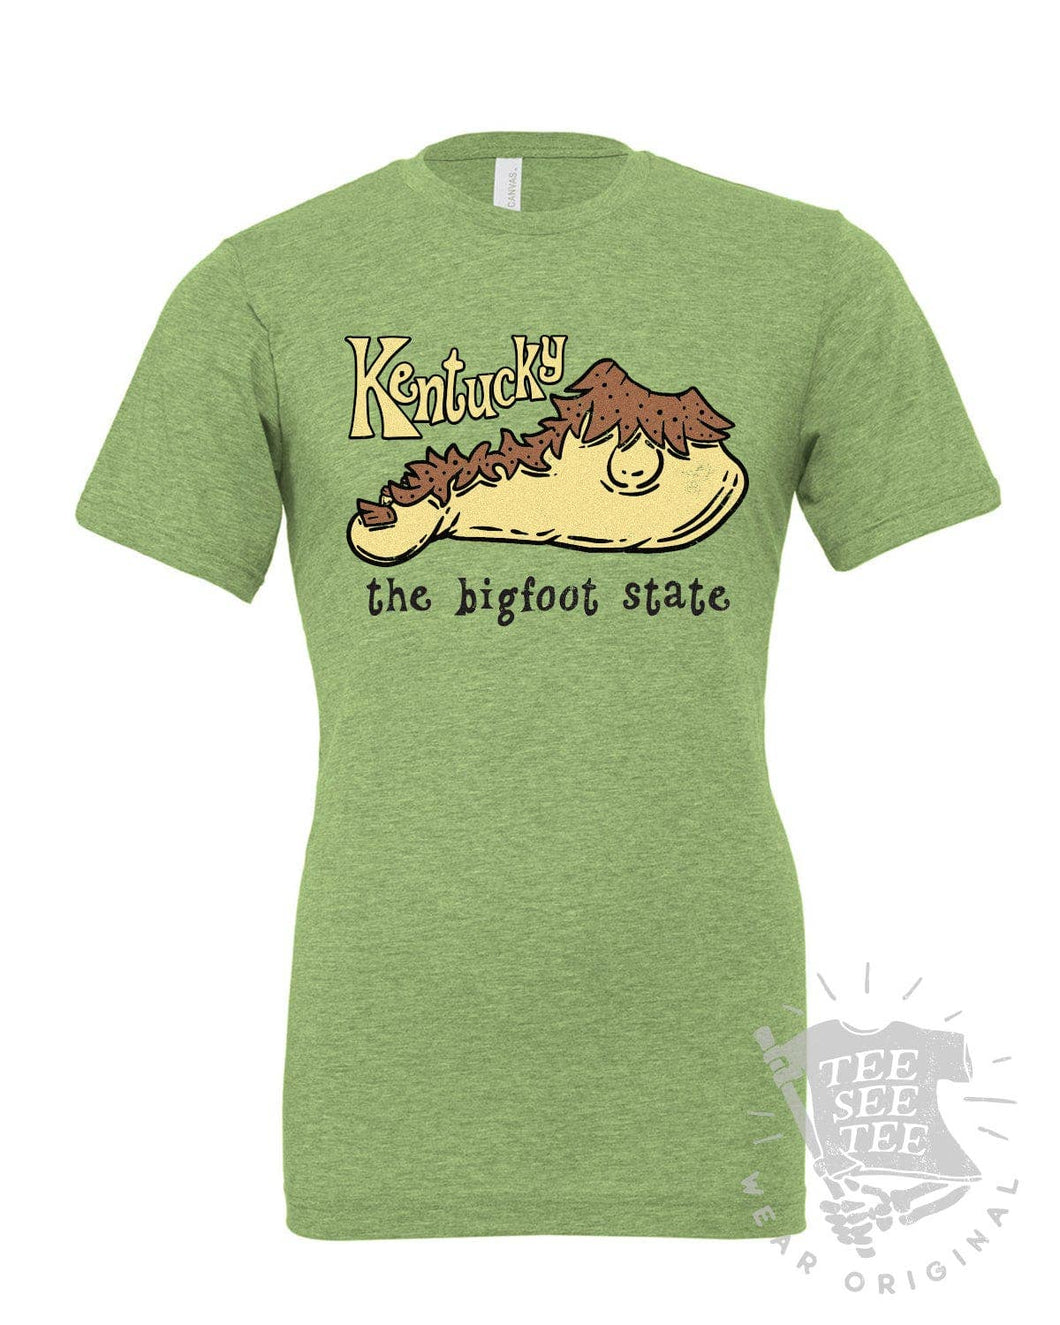 The Bigfoot State Kentucky Tee Shirt